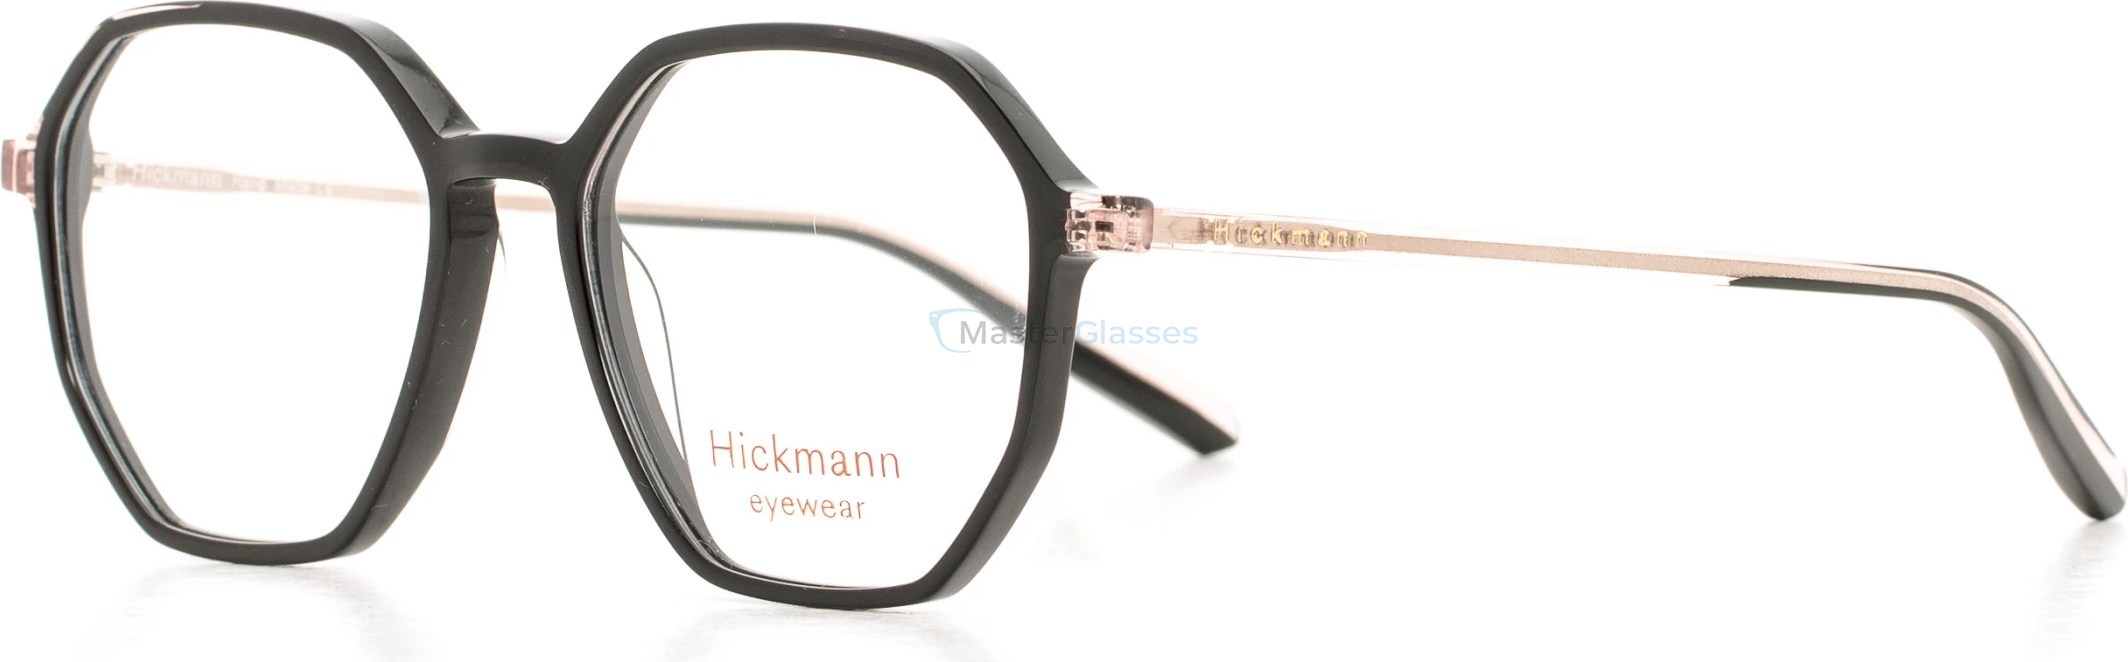  Hickmann HIY6000 P01